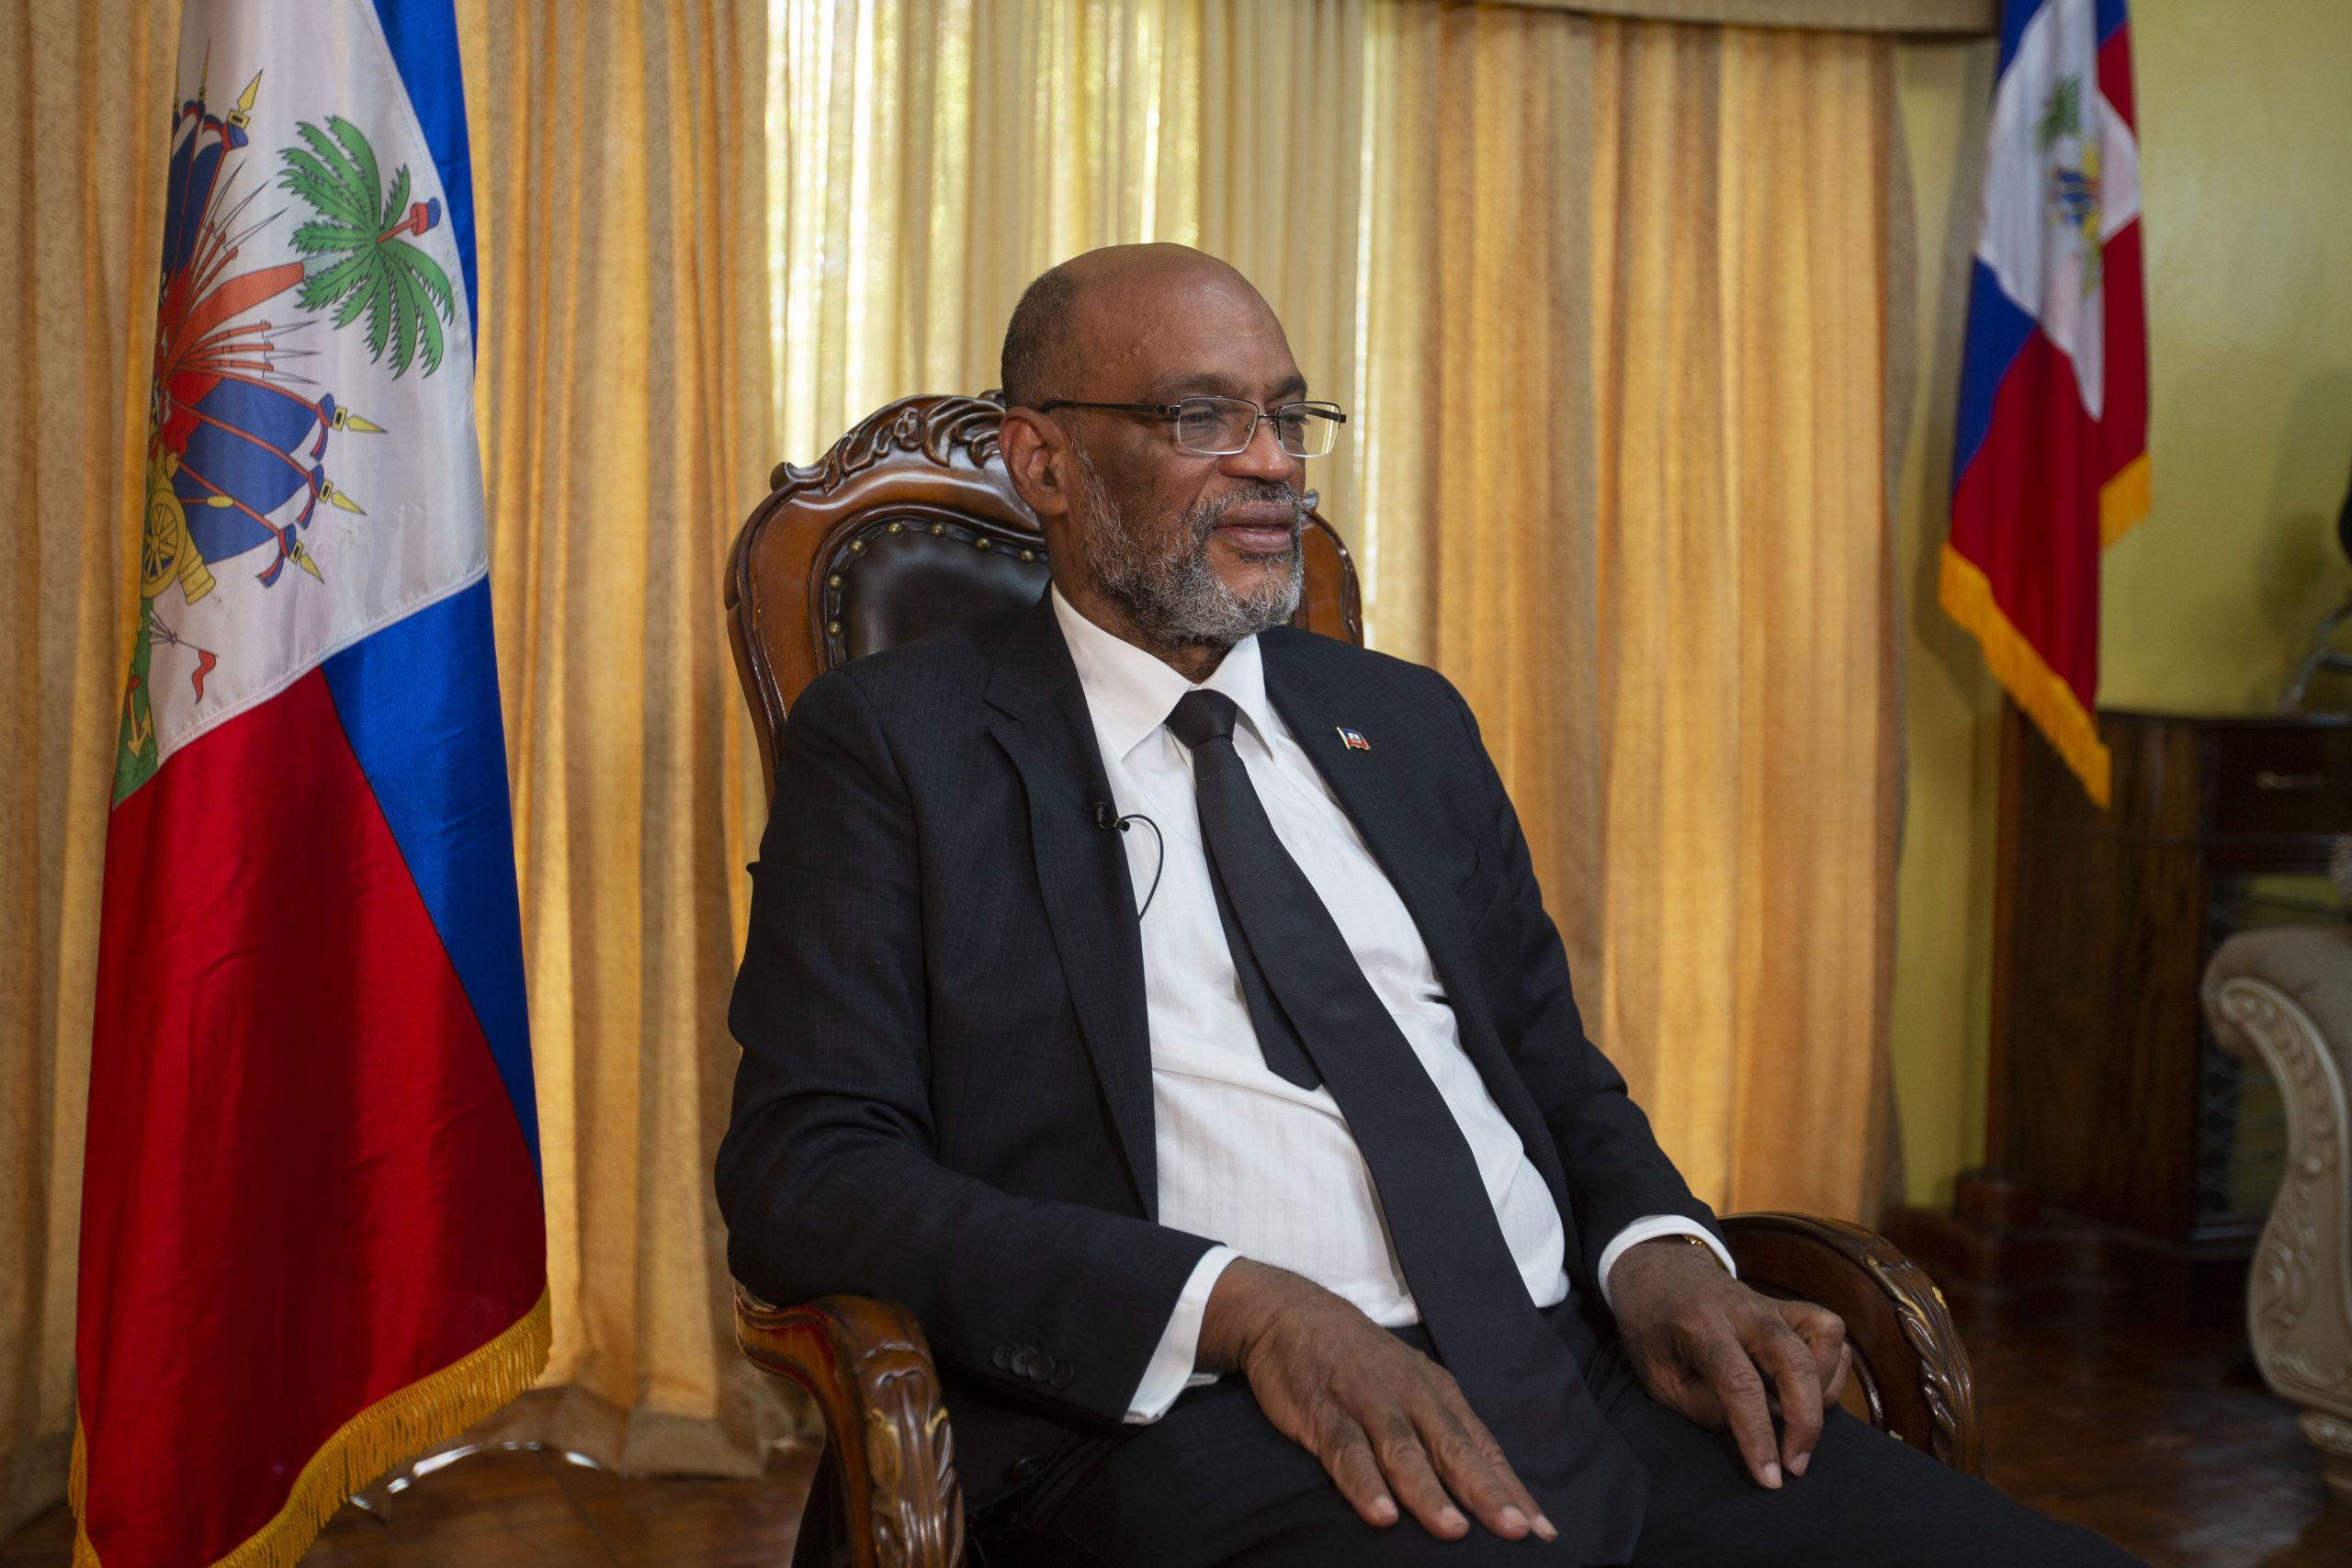 海地总理遭行刺未遂  官员人身安全再拉警报 